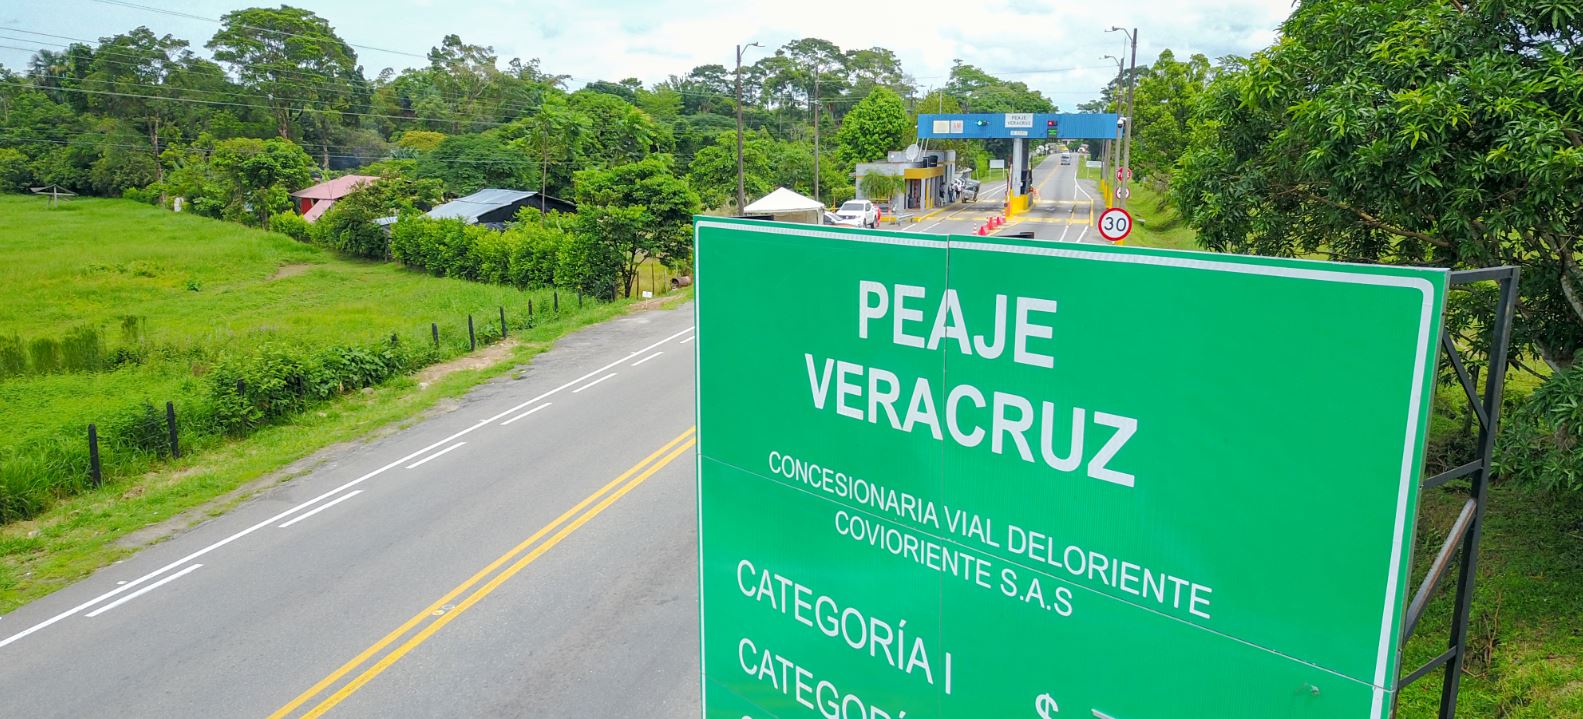 Villavicencio, 13 de junio de 2018. Covioriente adelanta trabajos de cambio de luminarias a la altura del peaje Veracruz, localizado en el PR 29+500 de la ruta nacional 6510, con el fin de mejorar la visibilidad nocturna en este sector.   Durante todo el día de hoy, 13 de enero de 2018, se llevará a […]